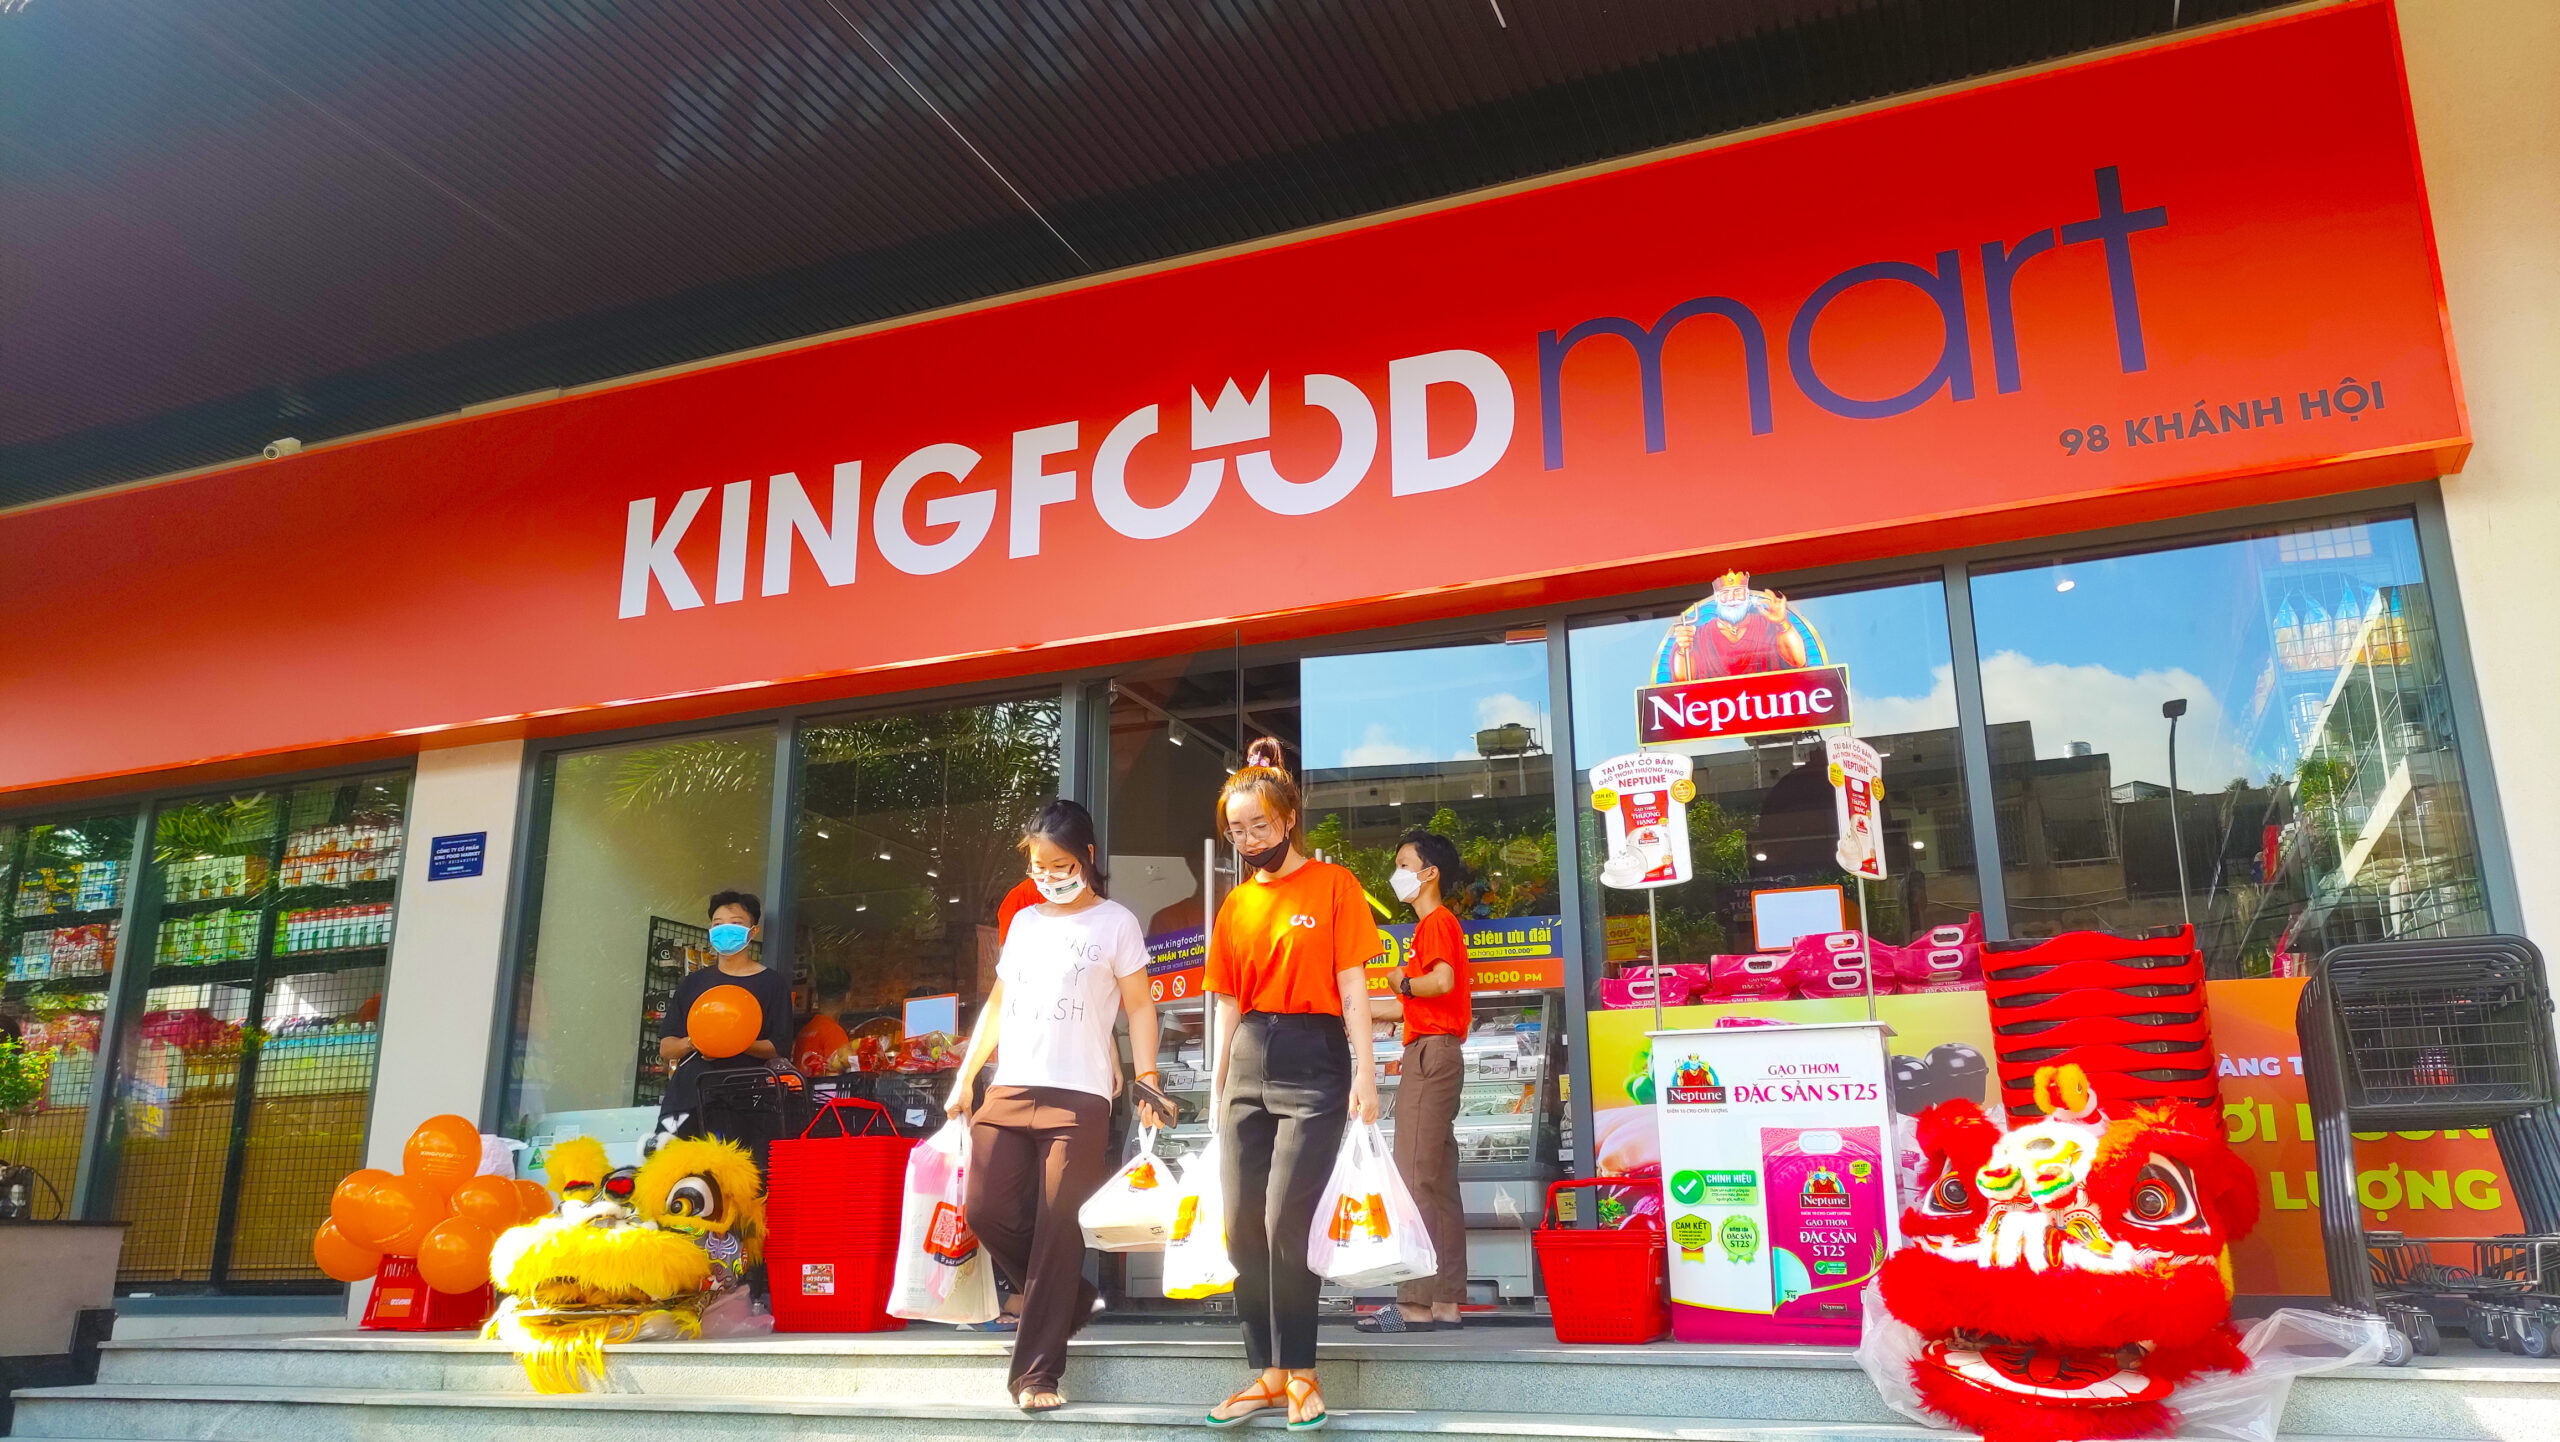 Kingfoodmart Khánh Hội, Quận 4